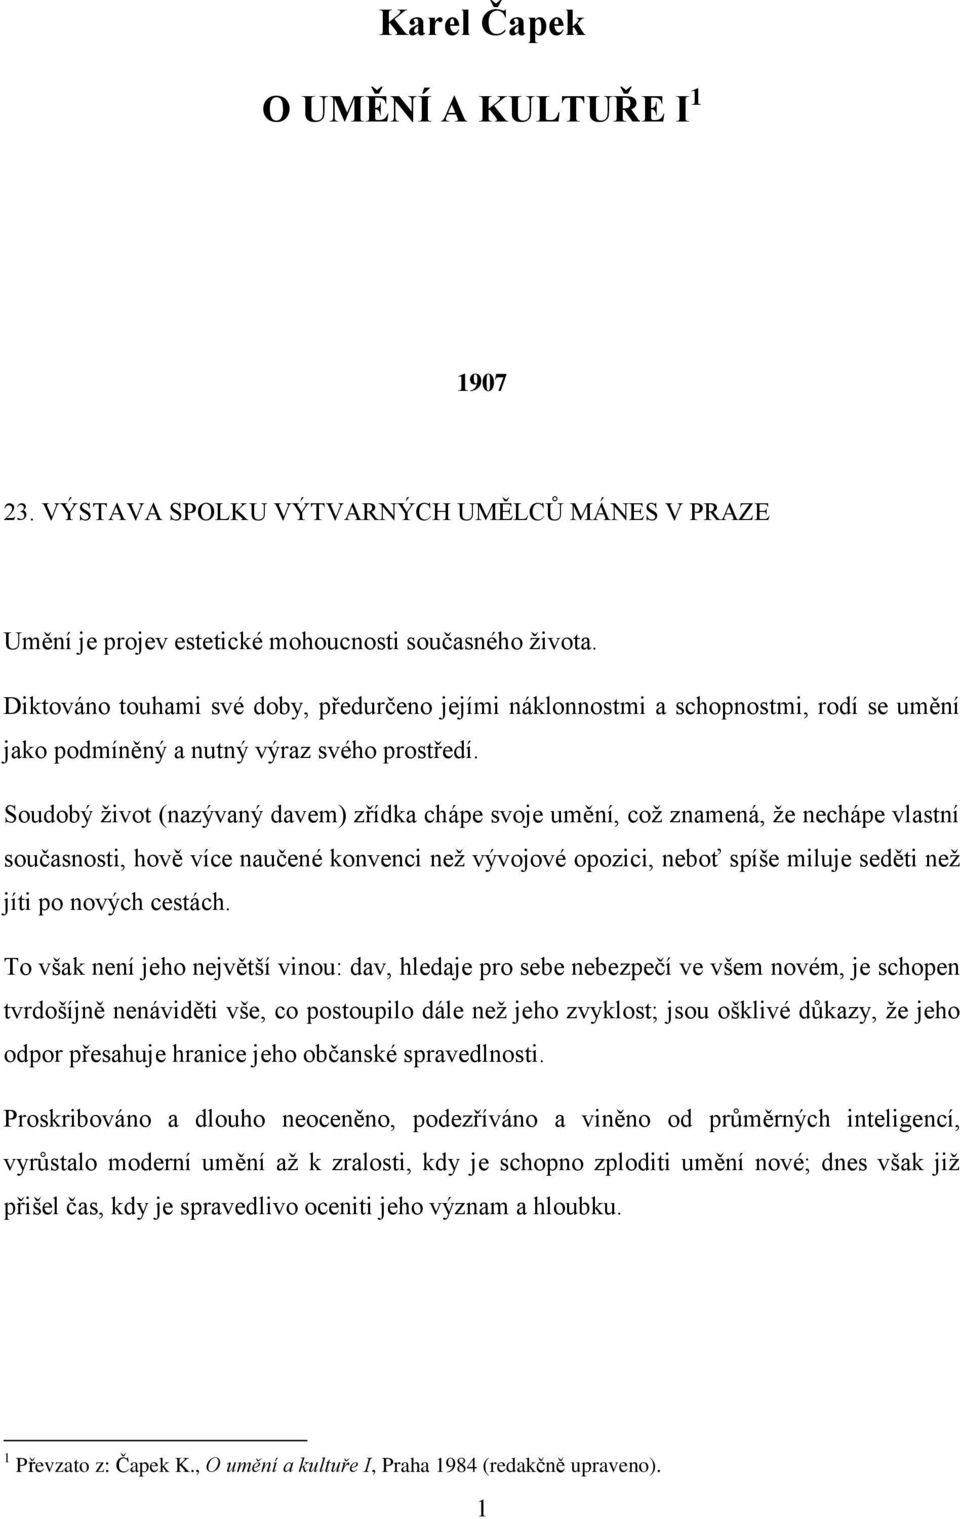 Karel Čapek O UMĚNÍ A KULTUŘE I 1 - PDF Free Download